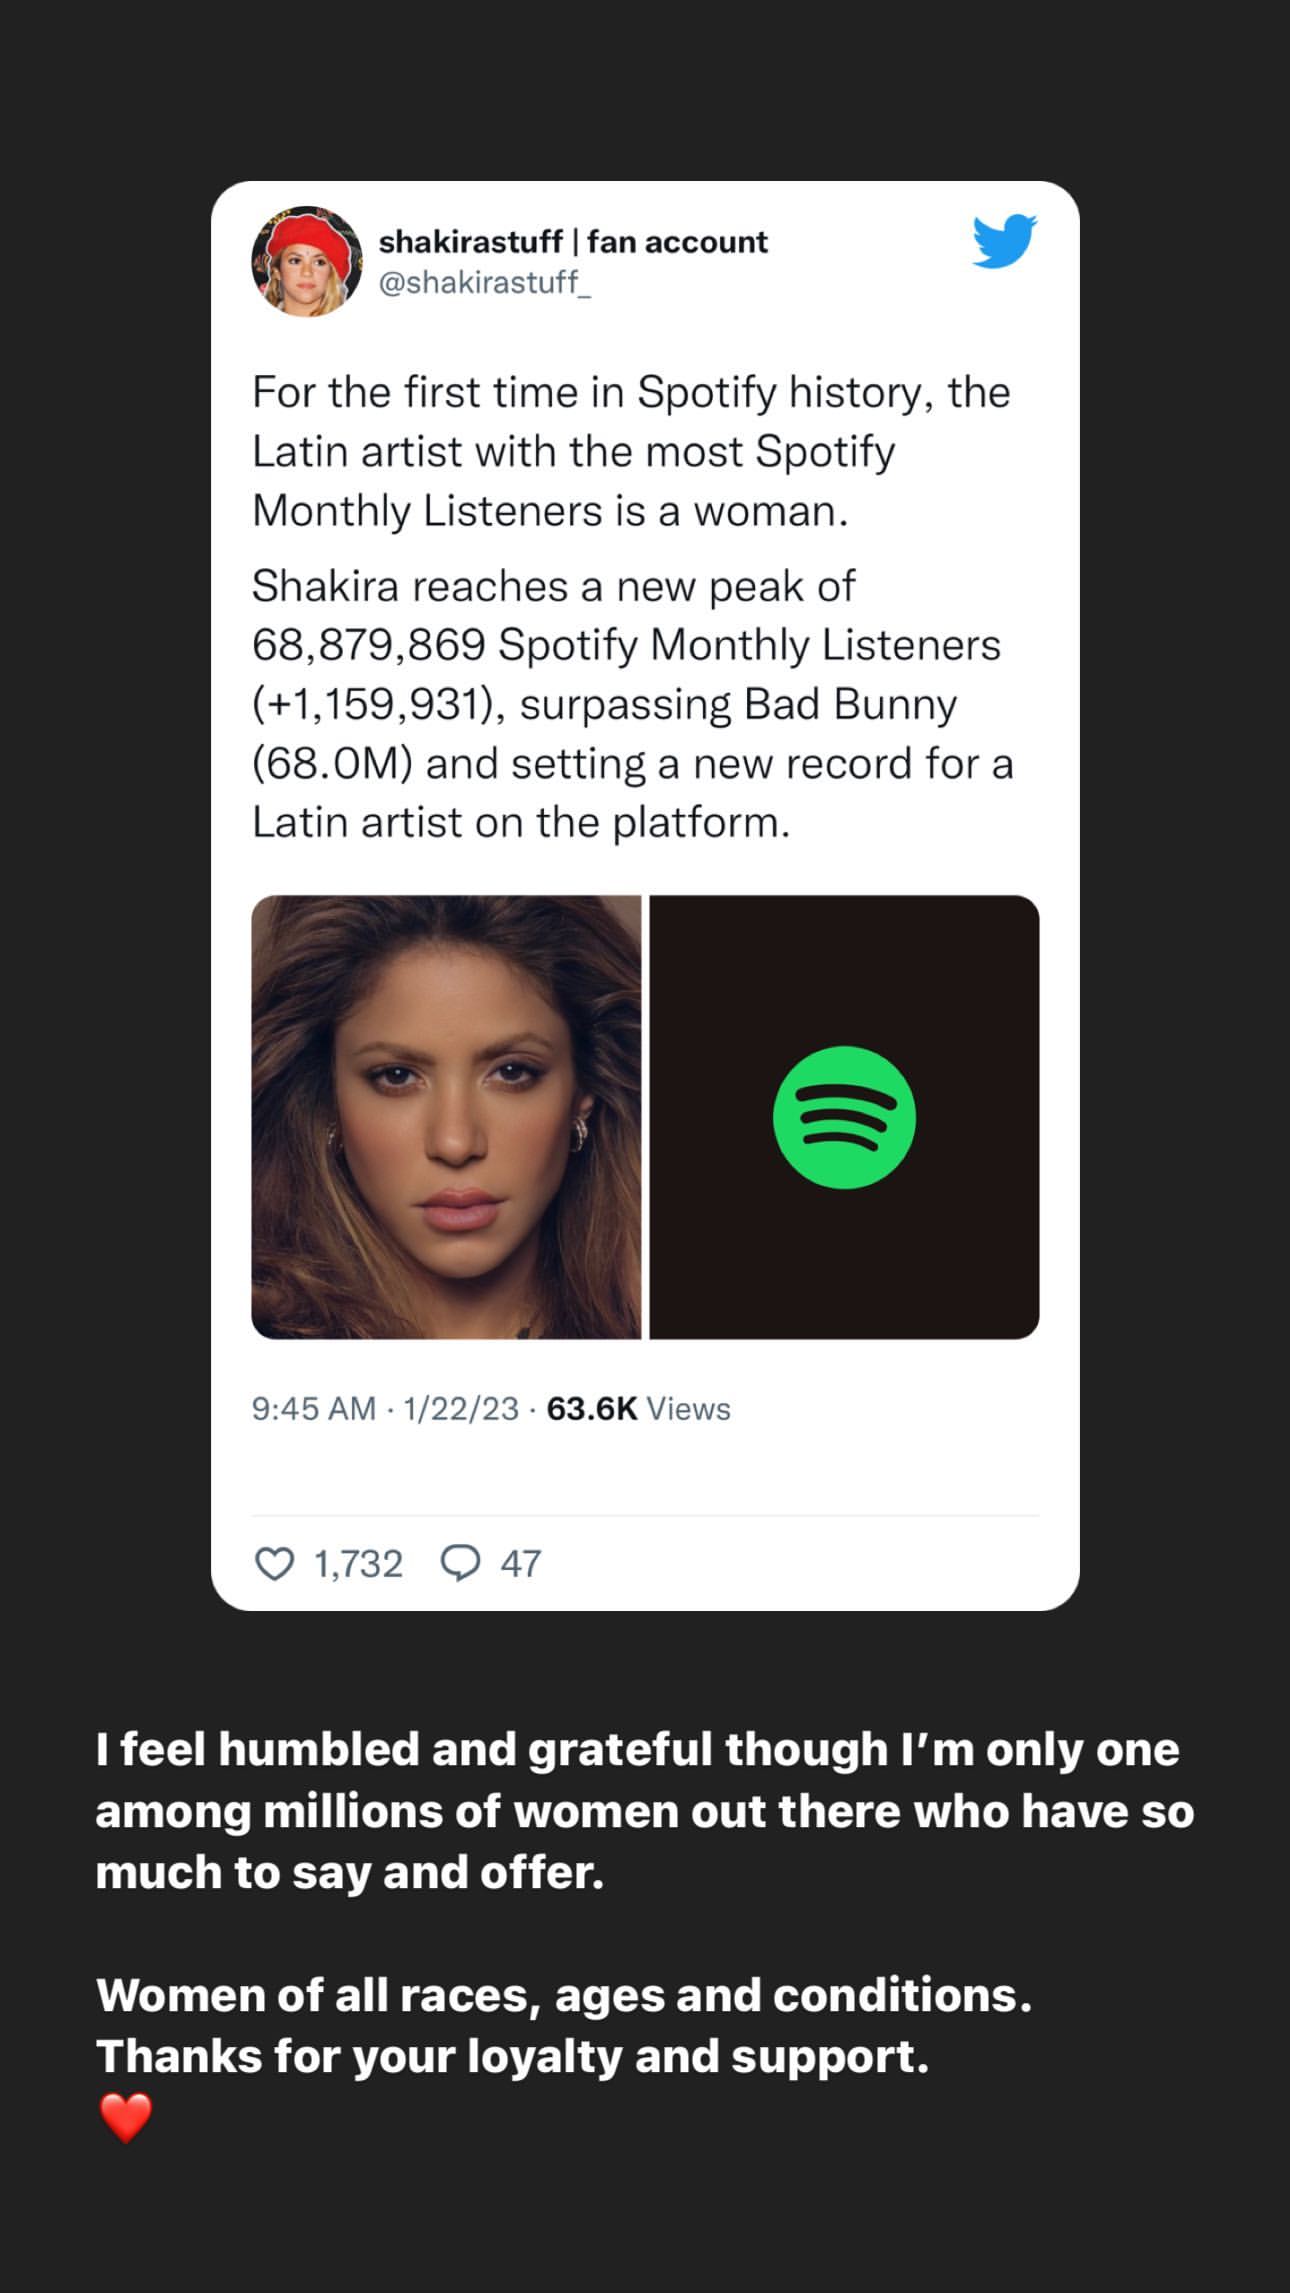 Mensaje de agradecimiento de Shakira a sus seguidores por el récord de oyentes en Spotify. Instagram/shakira